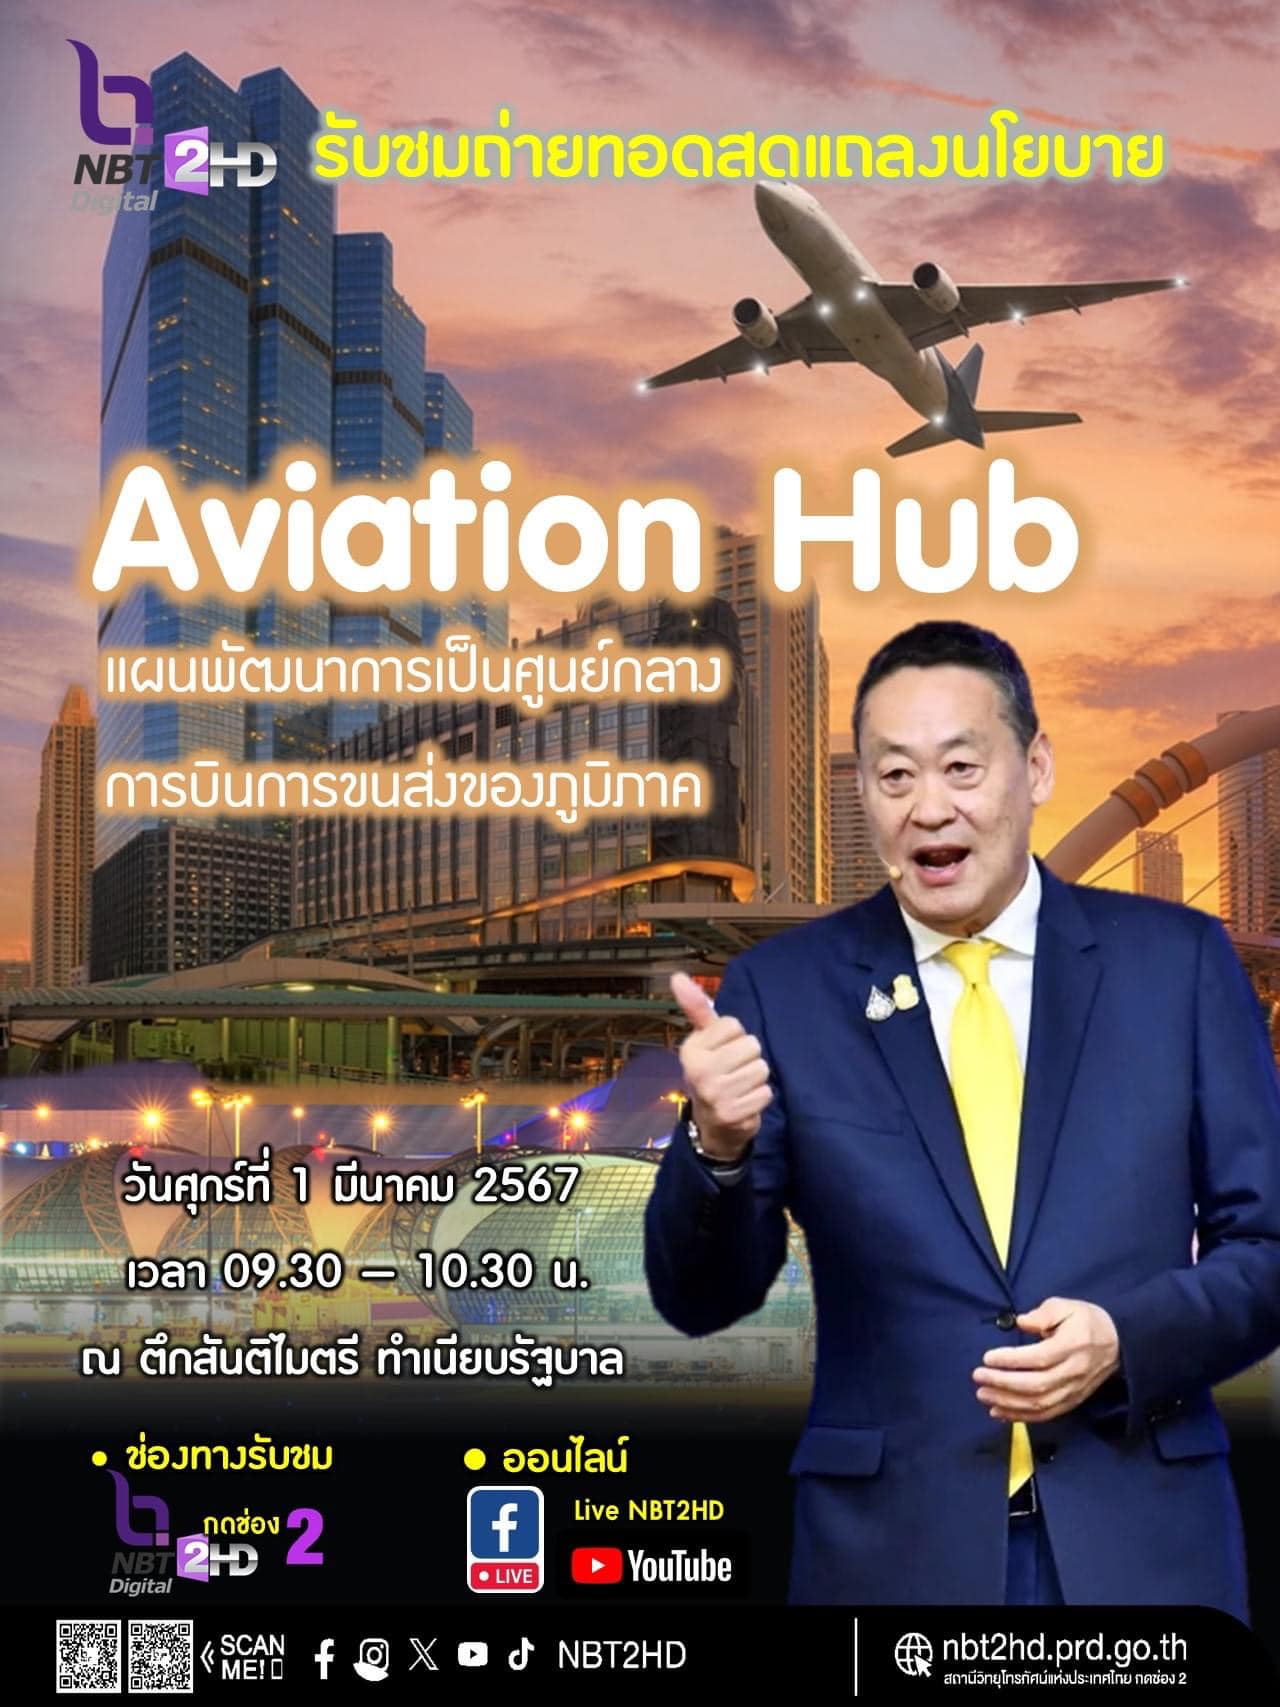 ประเทศไทยพร้อมก้าวสู่การเป็นศูนย์กลางการบินของภูมิภาค Southeast Asia แค่ไหน?  